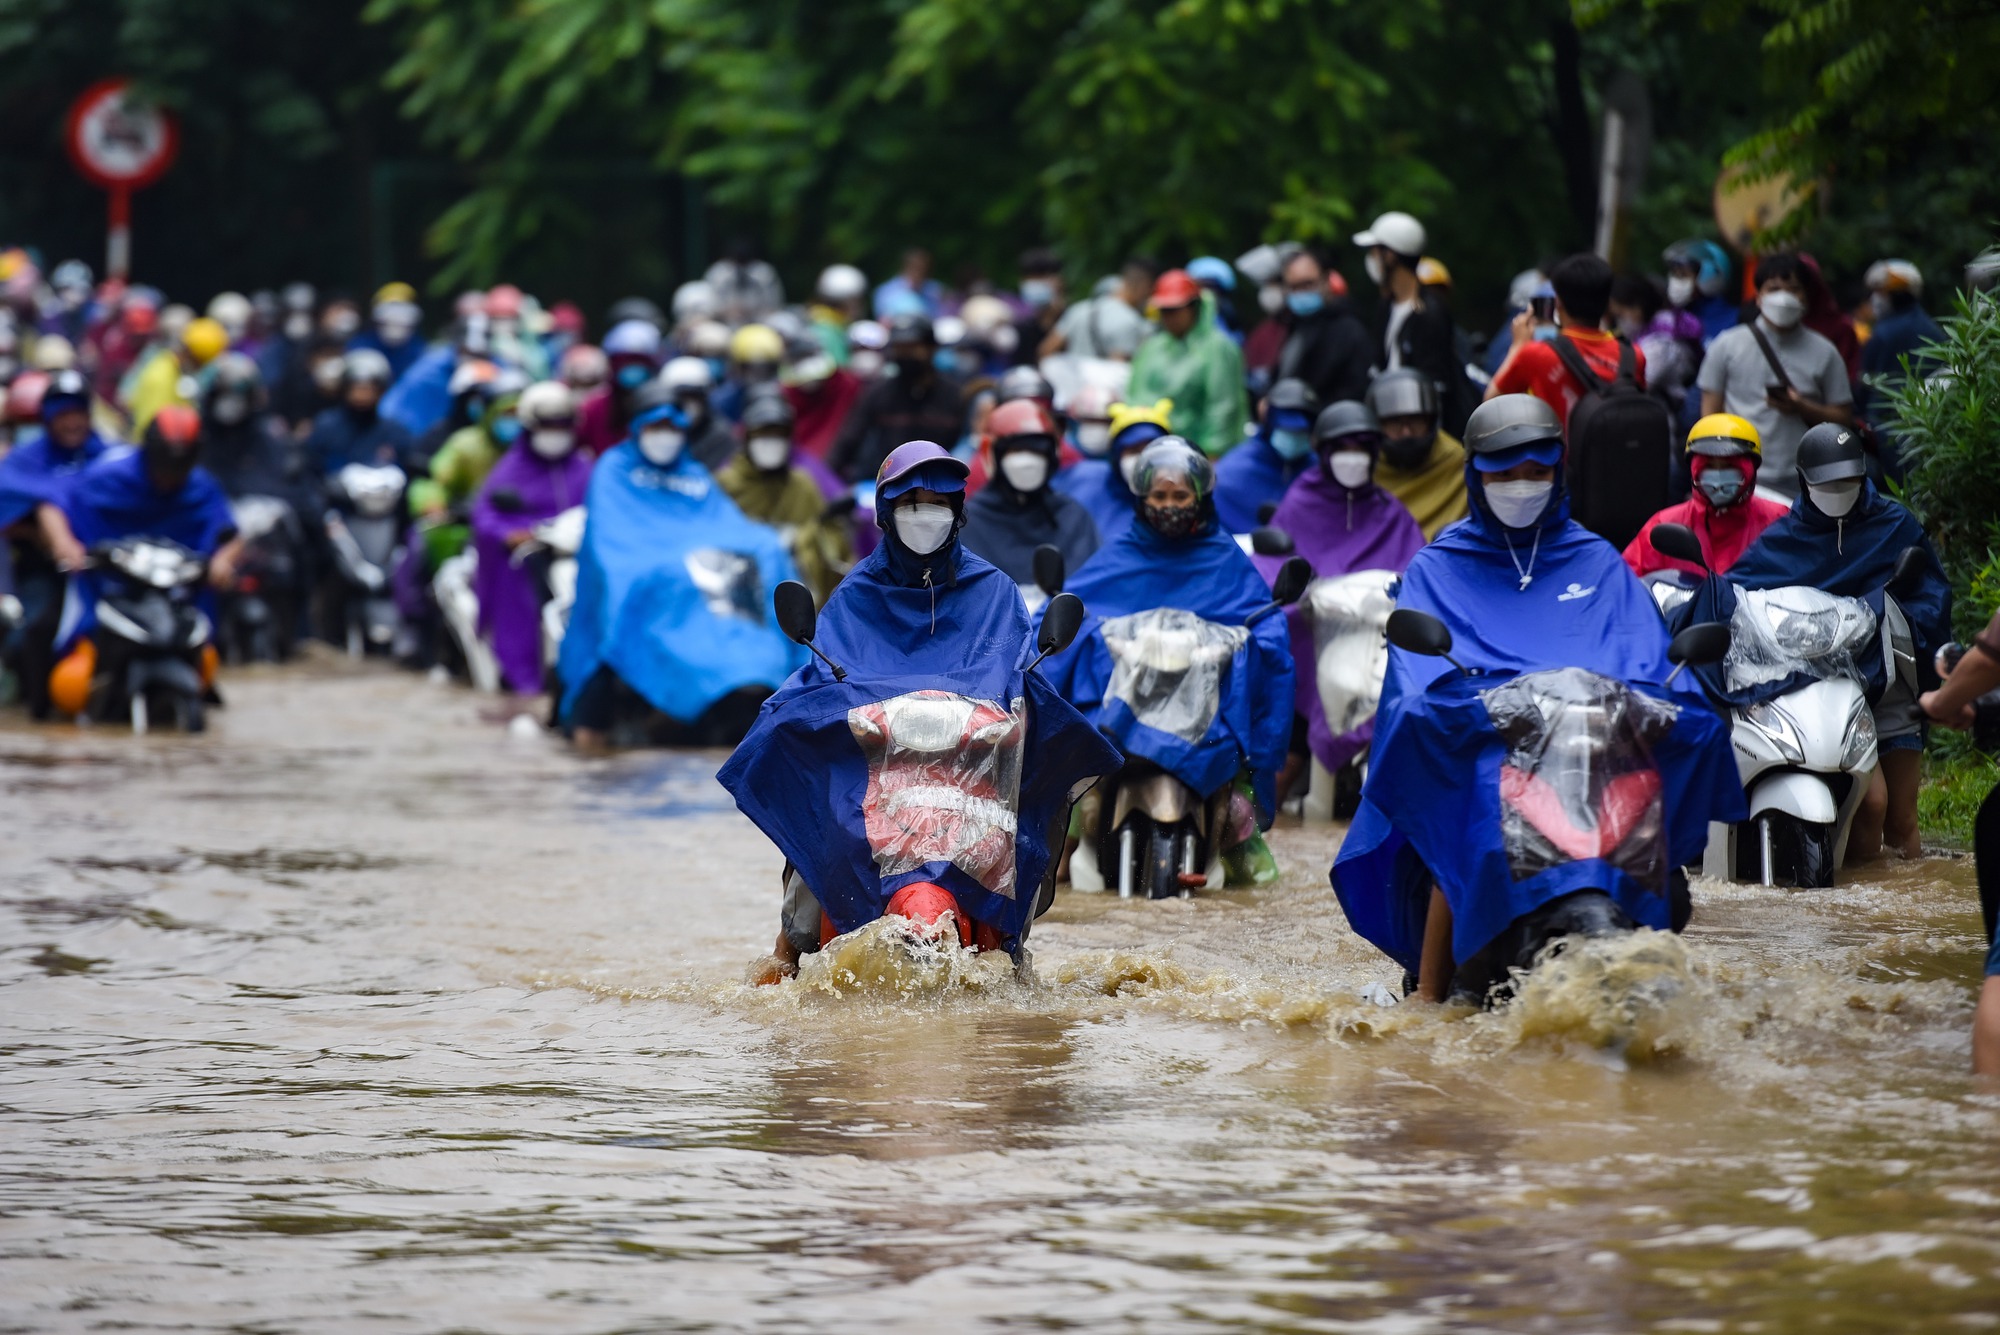 Đường gom đại lộ Thăng Long chìm trong biển nước sau trận mưa lớn - Ảnh 2.